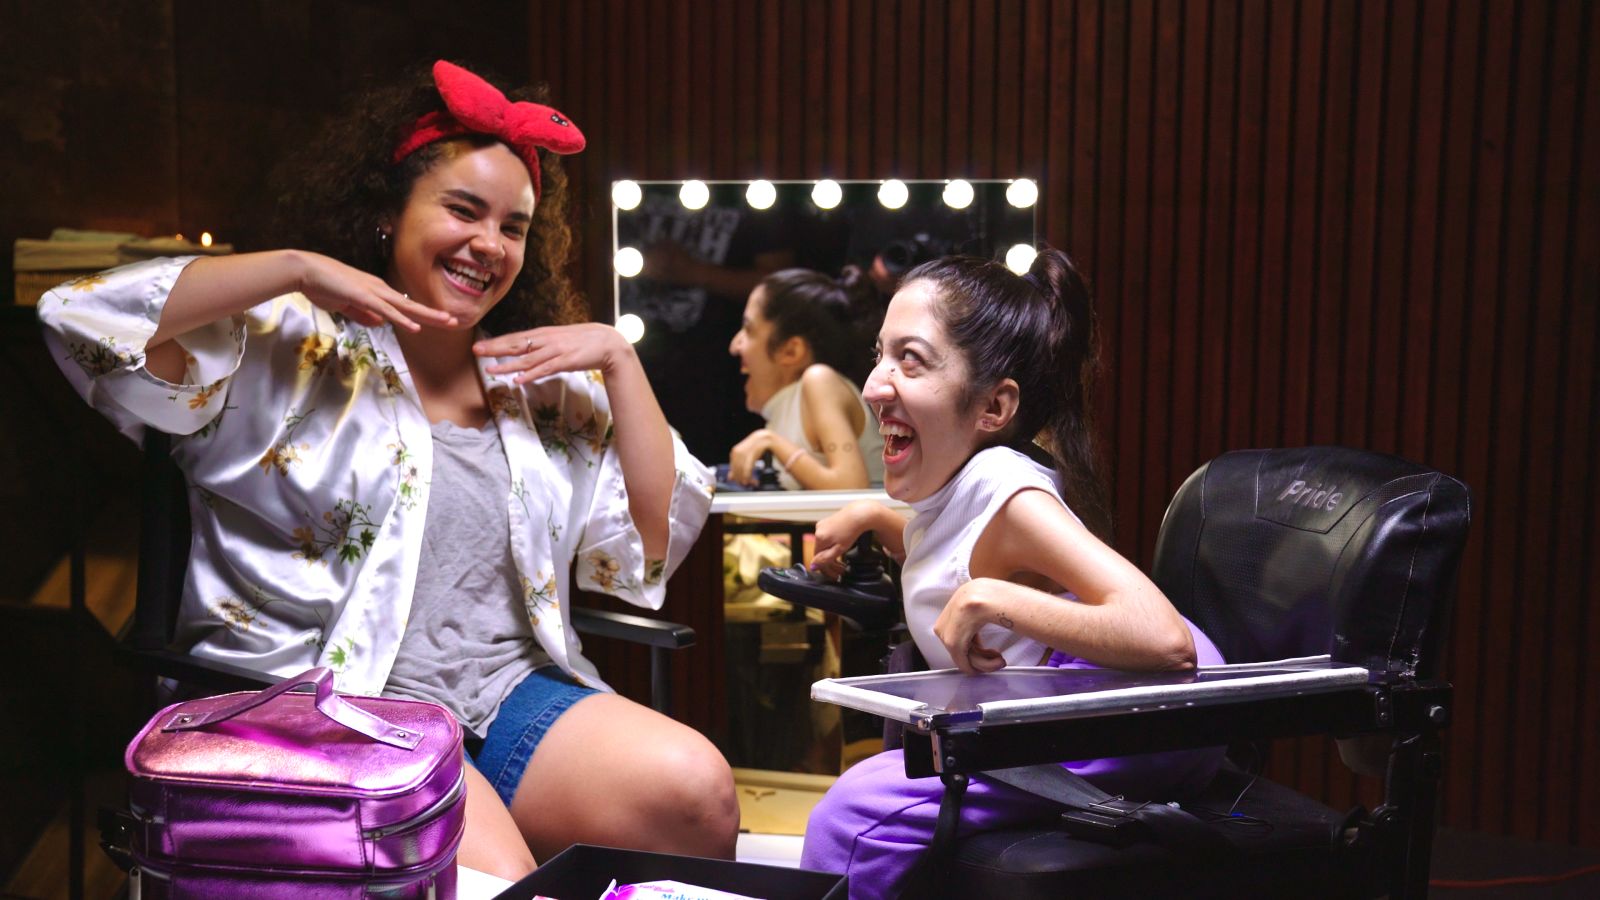 Ferny Ruiz y Esmeralda Soto celebran la belleza con sus mejores tips de maquillaje